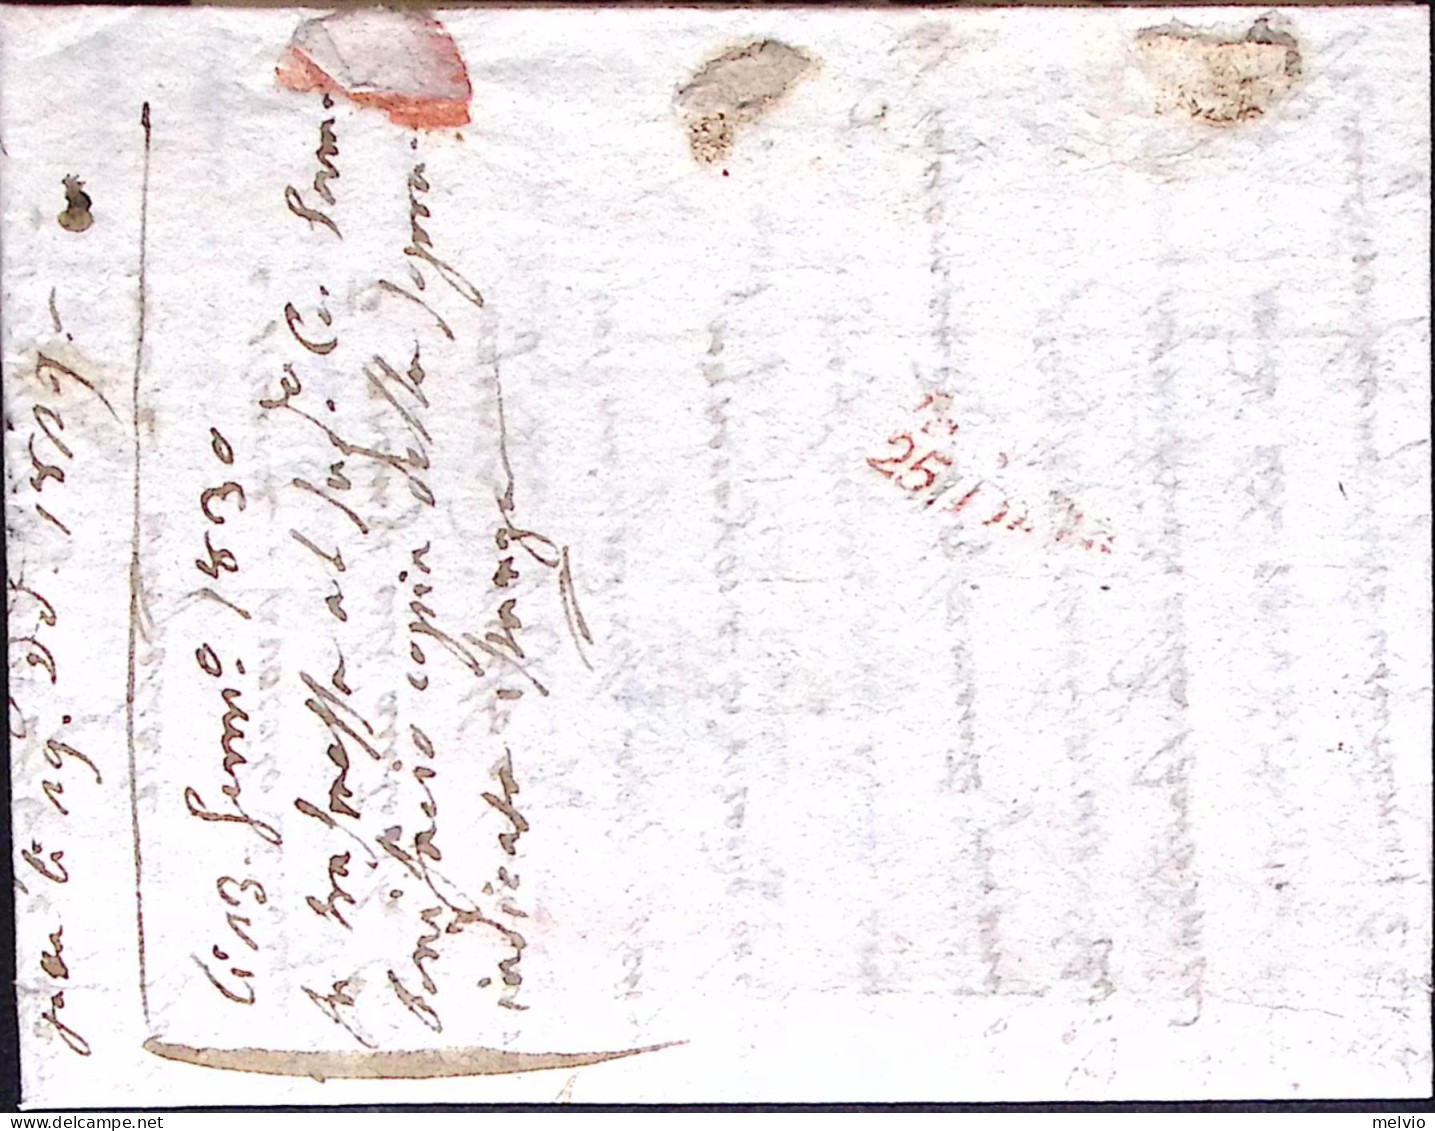 1829-PADOVA S.I. Su Lettera Completa Di Testo (22.10) Per Fermo Posta Verona - ...-1850 Préphilatélie